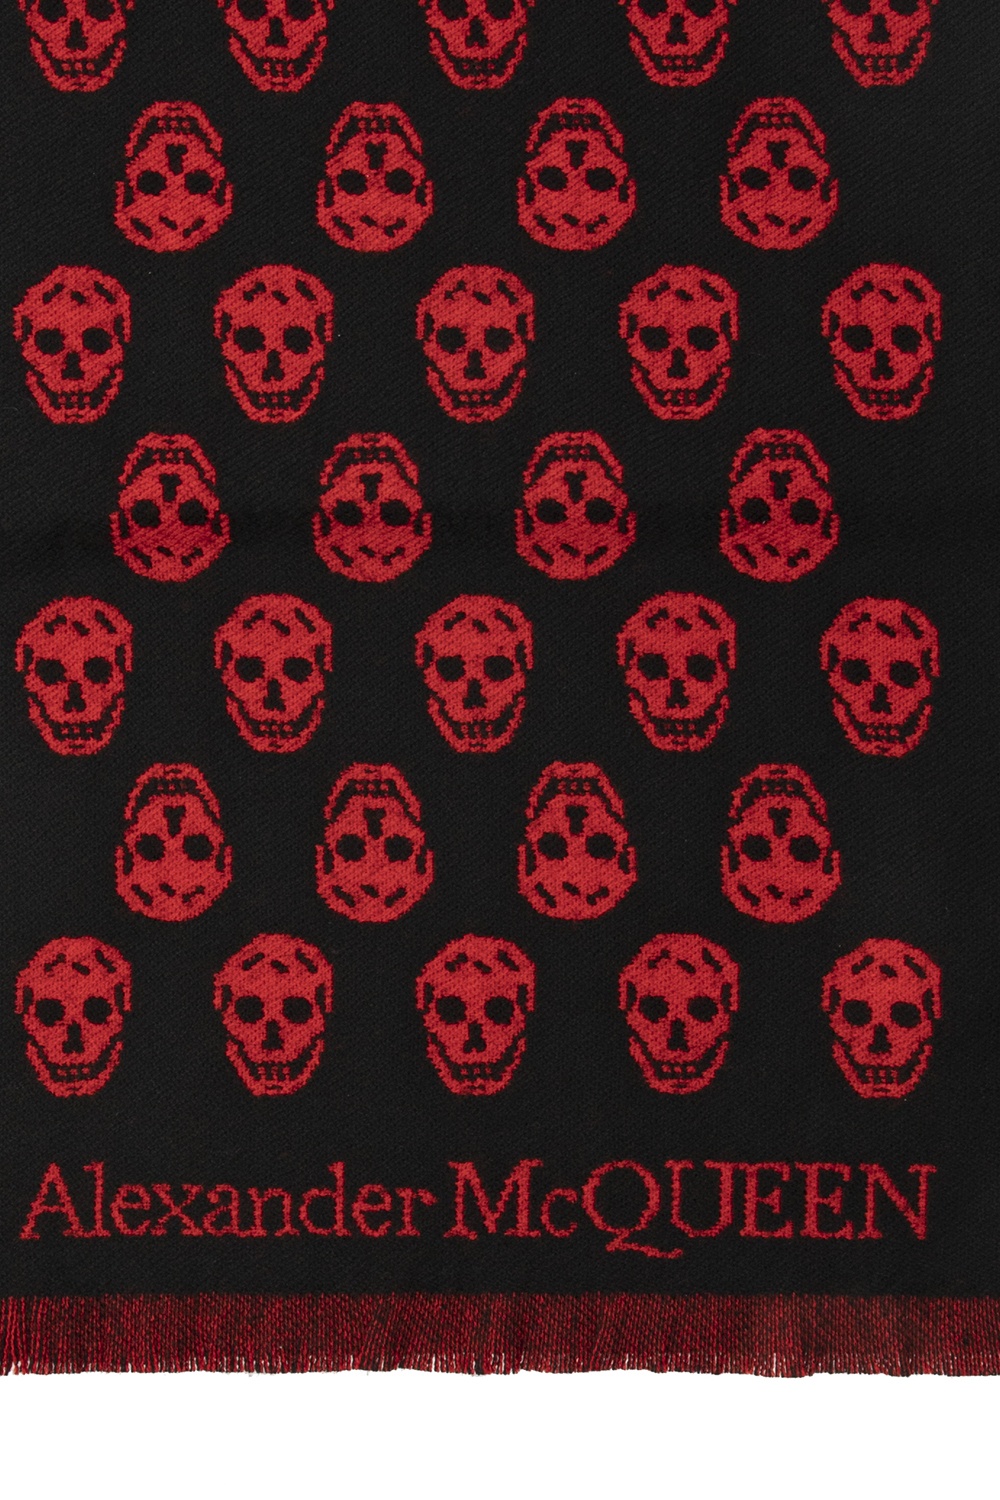 Alexander McQueen alexander mcqueen ruffle blouse